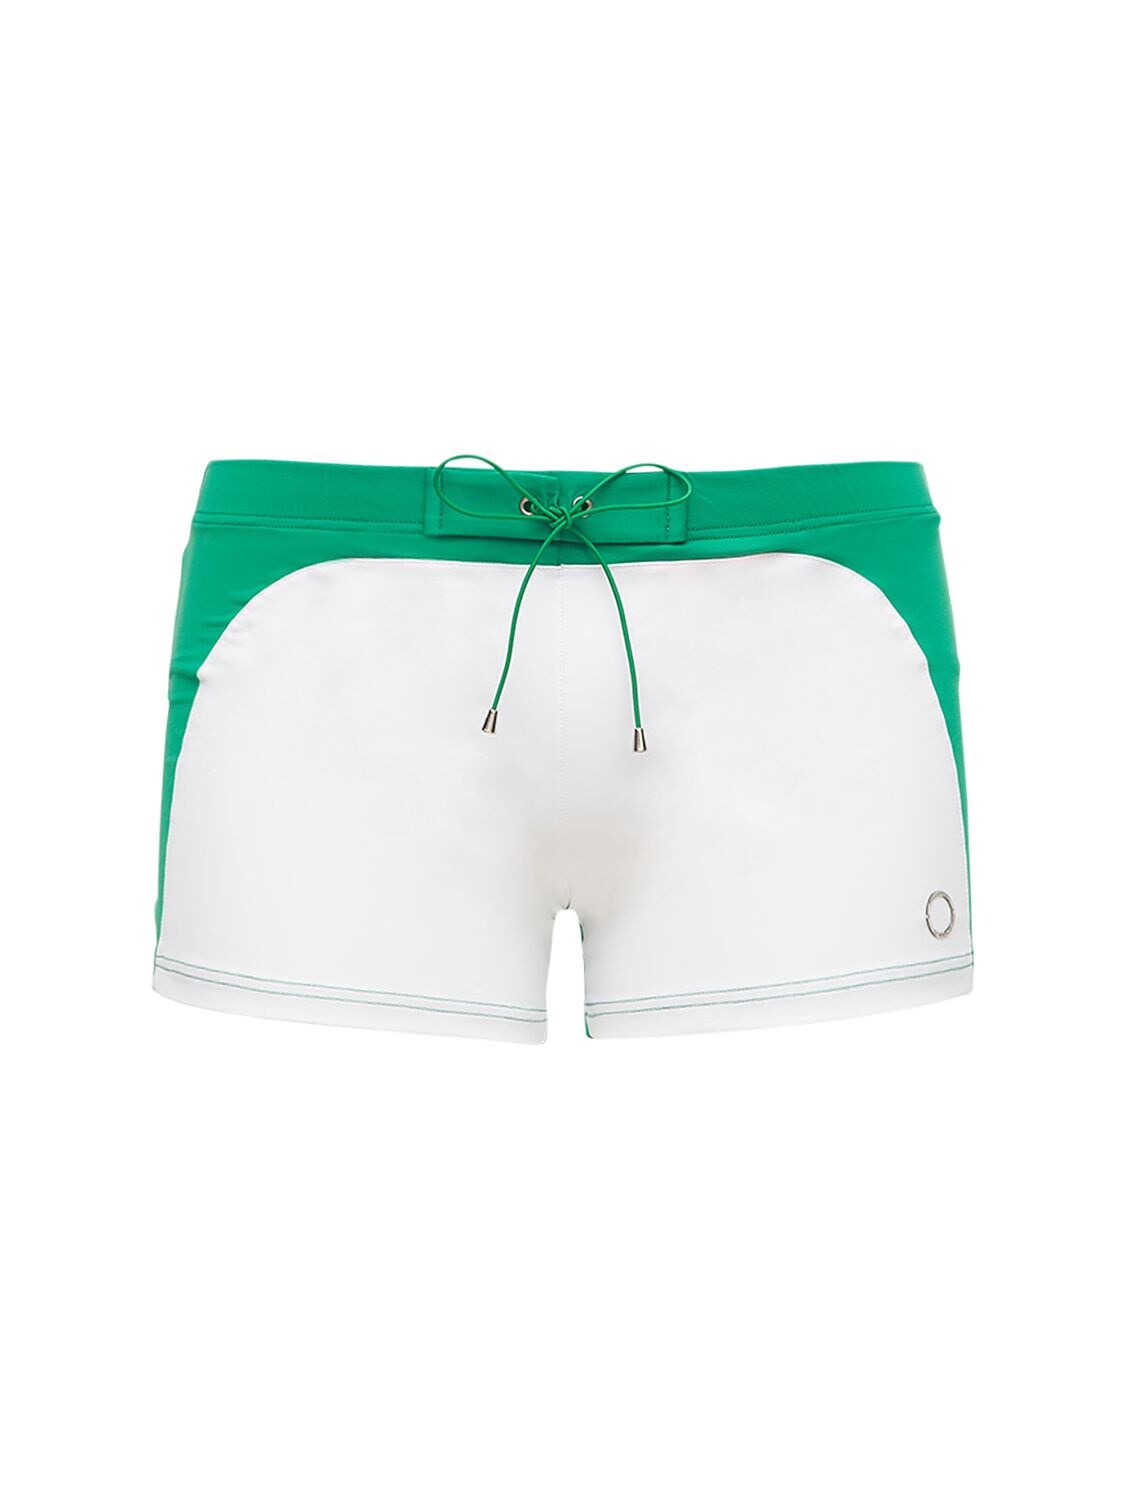 Alessandro Di Marco Marcos Stretch Nylon Swim Shorts In White,green